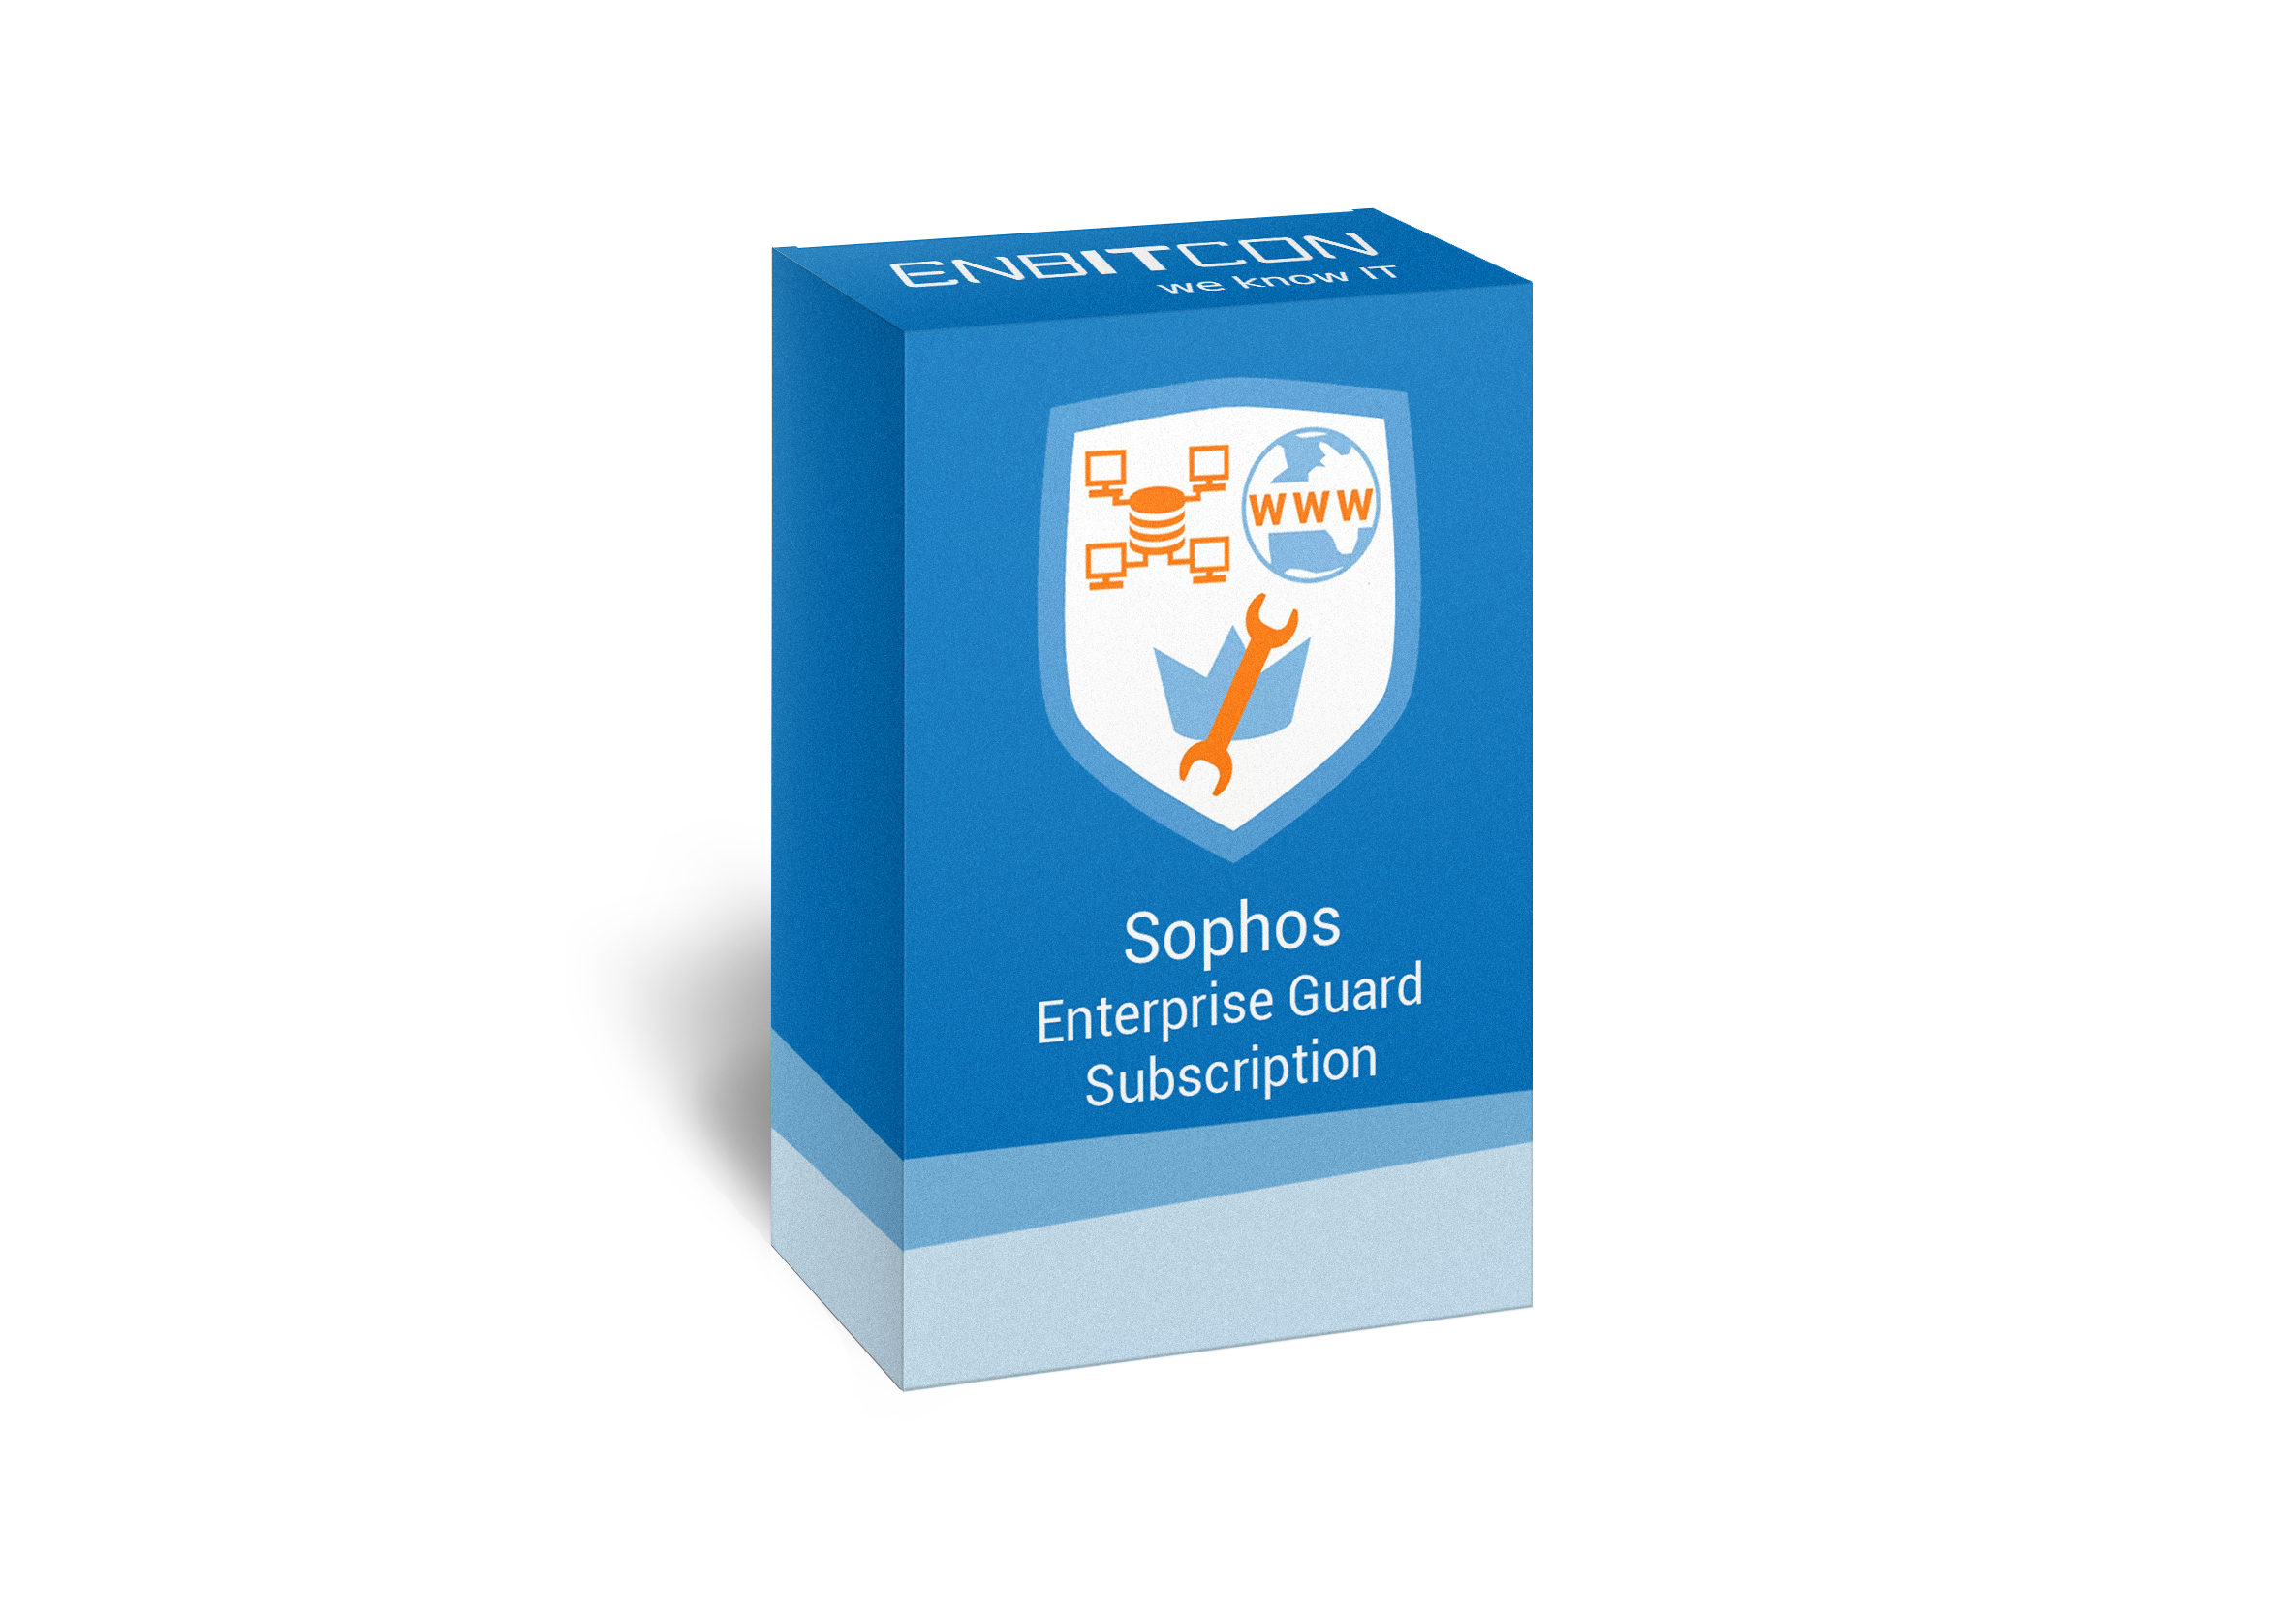 Sophos Enterprise Guard Subscription Box Vorschaubild bestehend aus einem blauen Schild, indem sich sich ein Computernetz, WWW und Schraubenschlüssel befinden, auf einer blauen Box